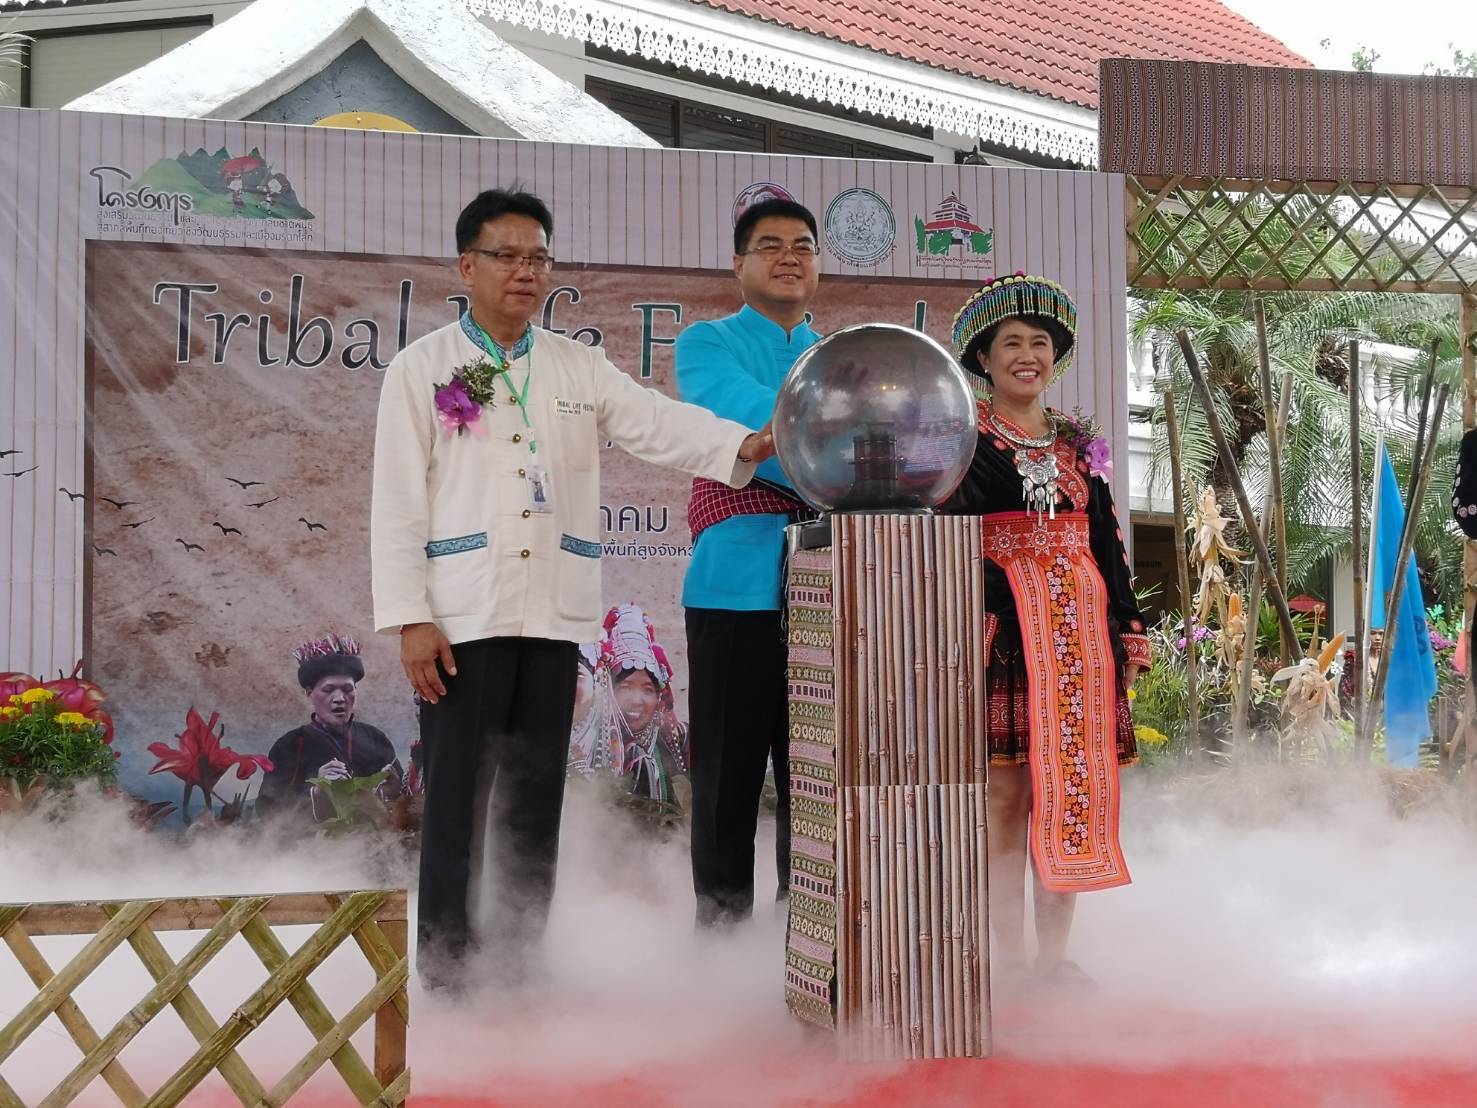 จังหวัดเชียงใหม่ ร่วมกับ กรมพัฒนาสังคมและสวัสดิการ จัดงาน “Tribal Life festival in Chiang Mai 2018” ระหว่างวันที่ 15 - 18 ส.ค.นี้ ณ พิพิธภัณฑ์เรียนรู้ราษฎรบนพื้นที่สูงจังหวัดเชียงใหม่ โดยนำวัฒนธรรมภูมิปัญญาล้านนาและสินค้ากลุ่มชาติพันธุ์บนพื้นที่สูงกว่า 10